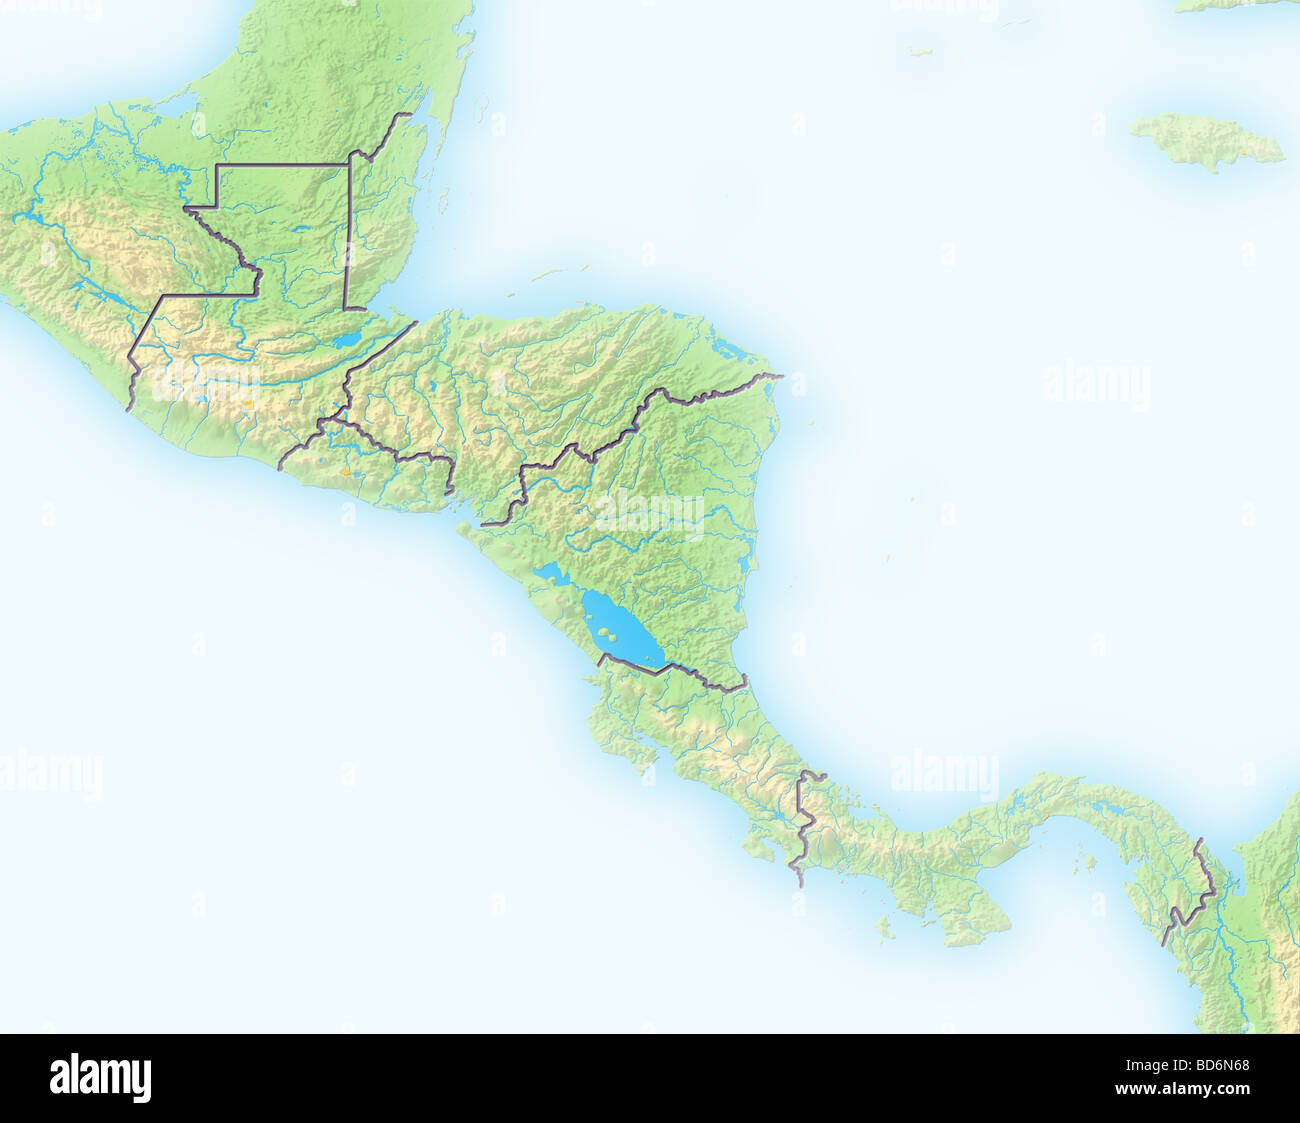 Mappa del centro america immagini e fotografie stock ad alta risoluzione -  Alamy